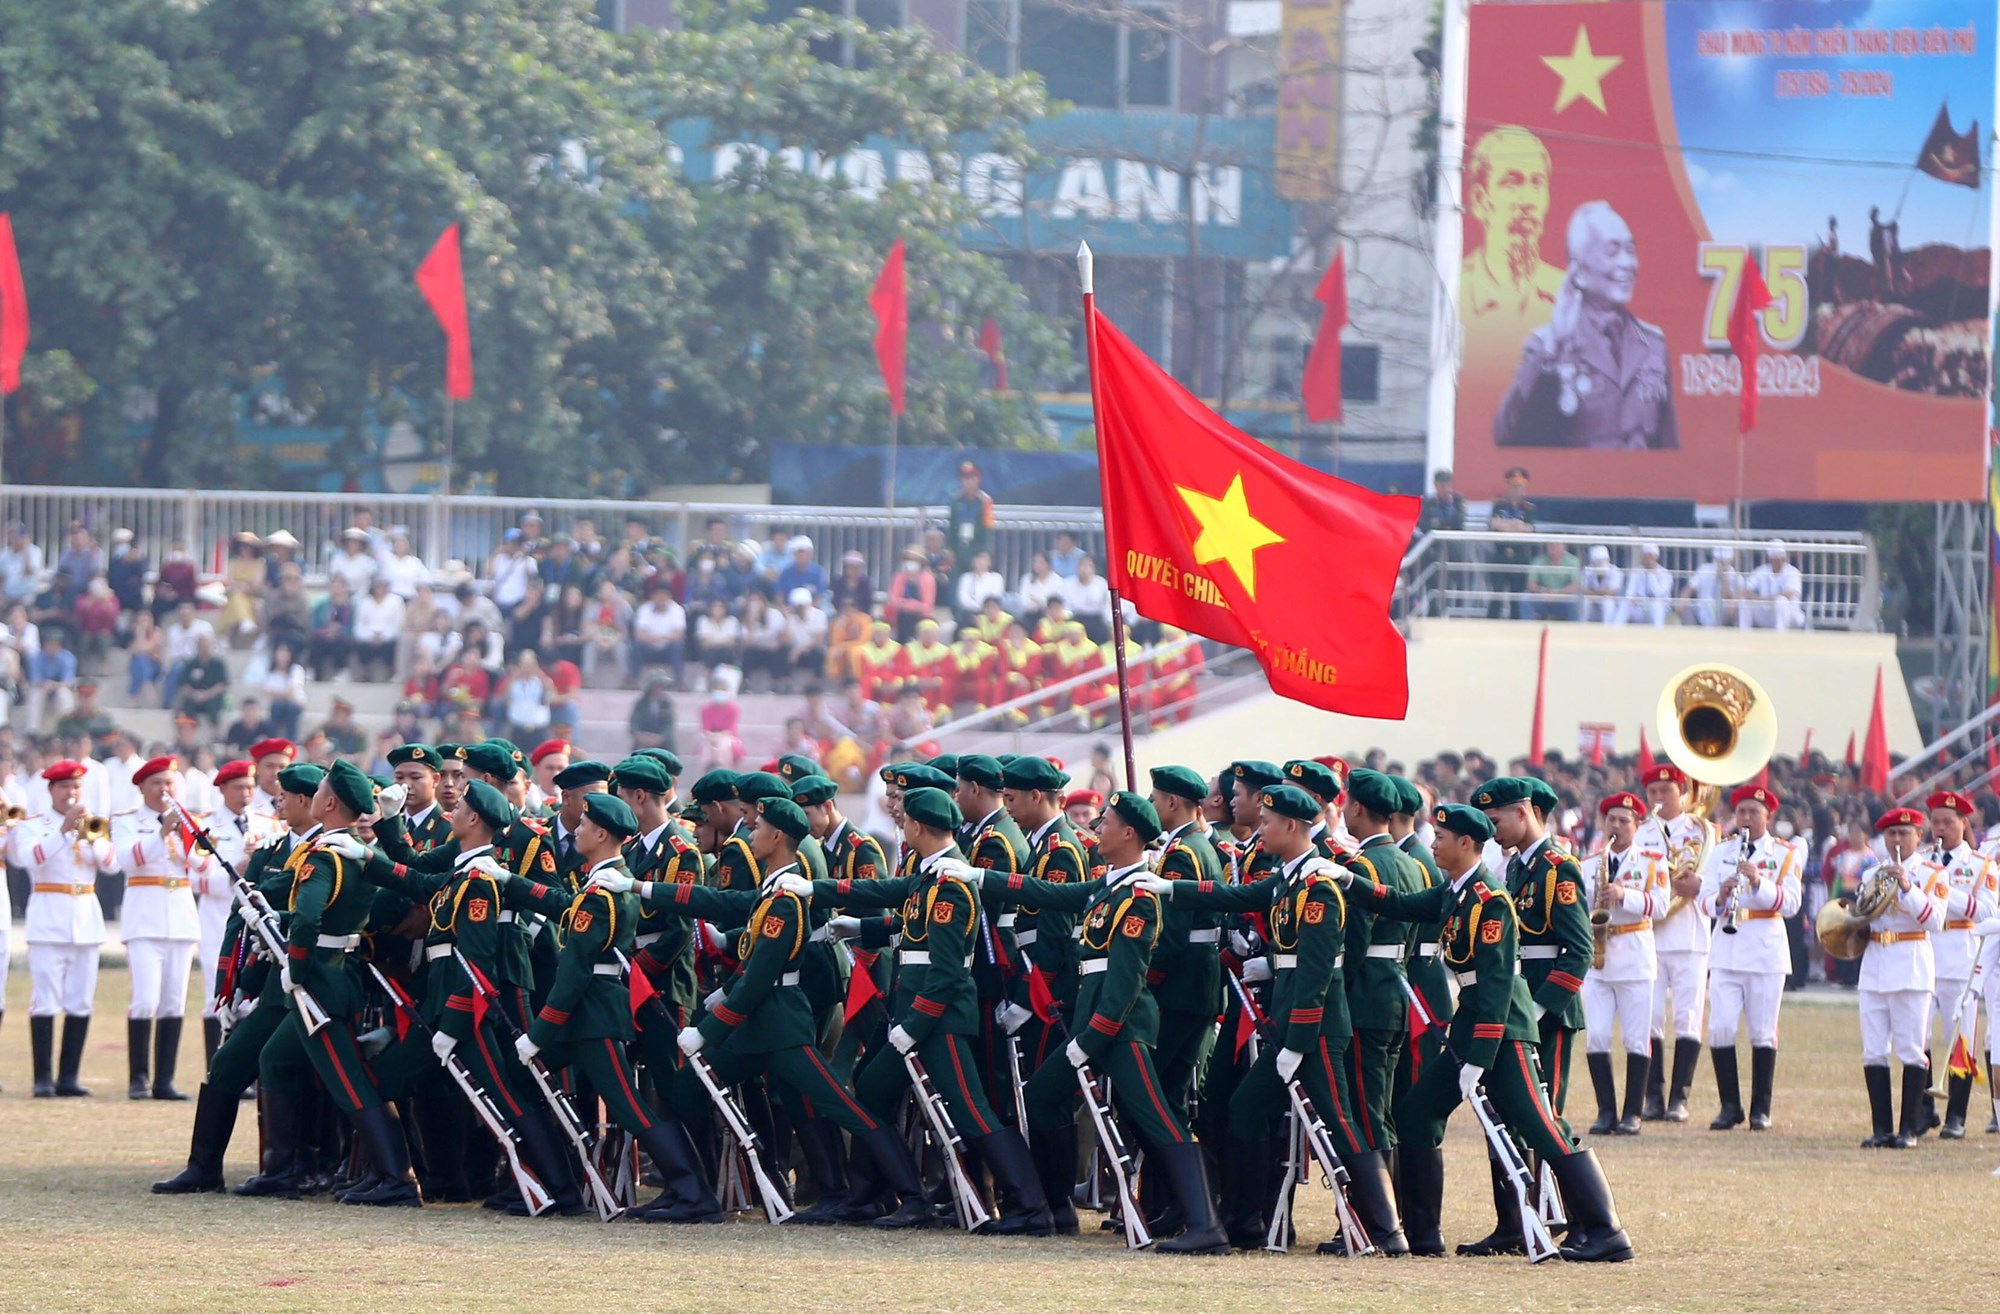 Tổng duyệt diễu binh, diễu hành kỷ niệm 70 năm Chiến thắng Điện Biên Phủ - ảnh 9